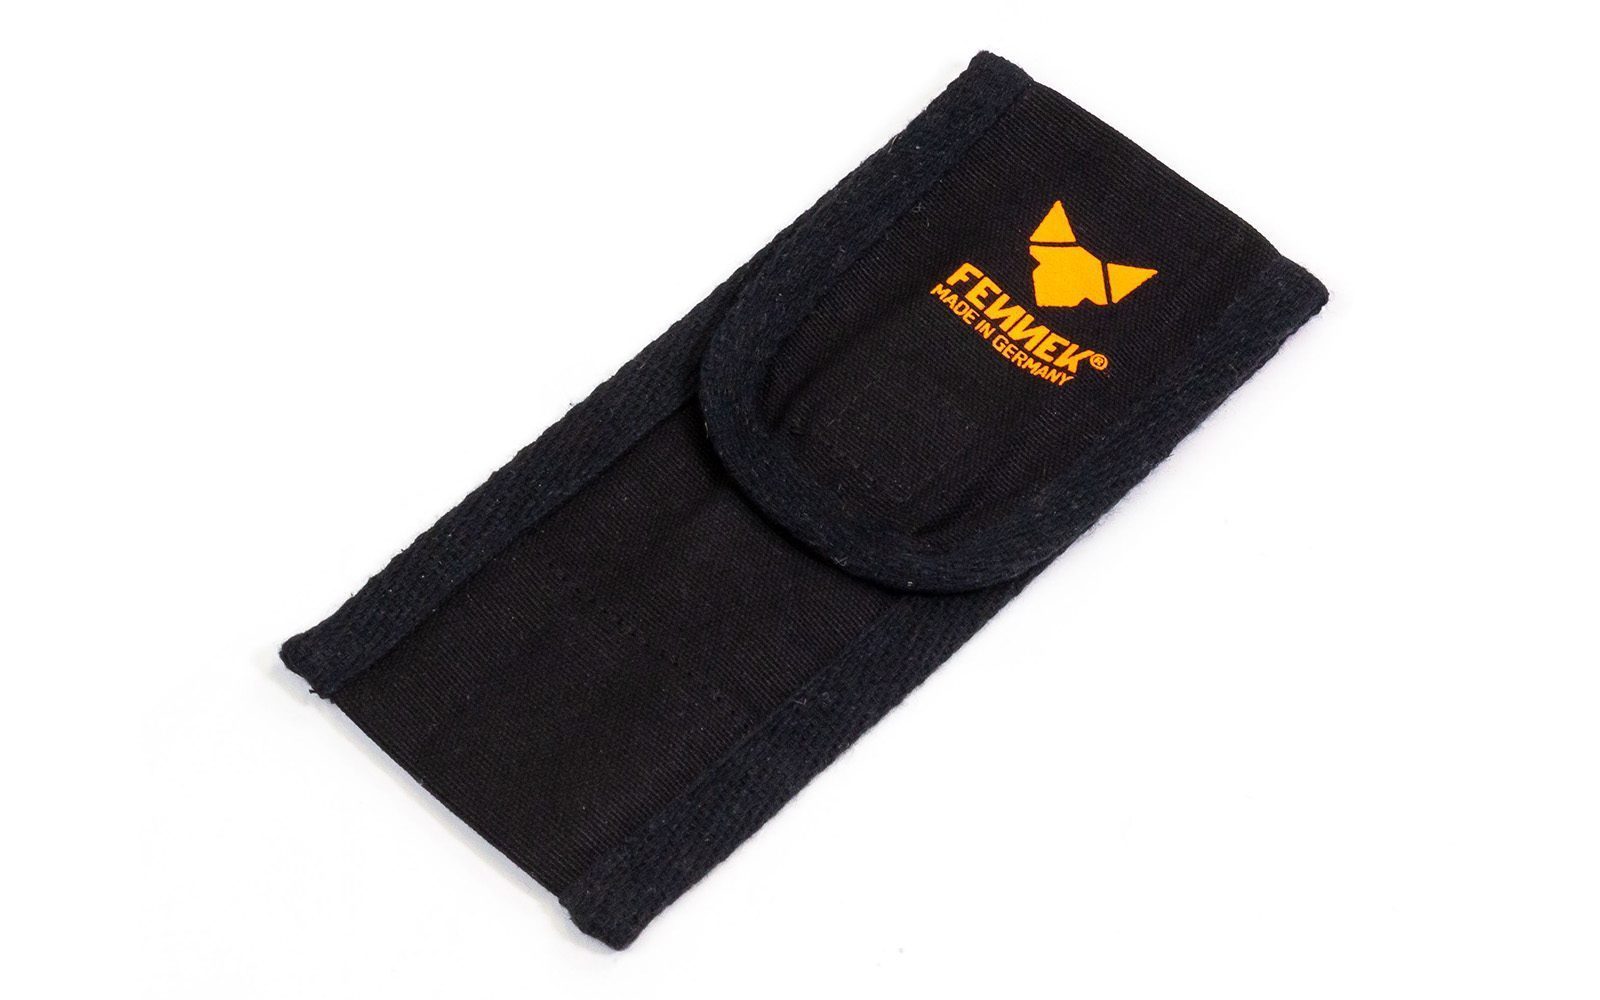 Schwarze Baumwolltasche mit FENNEK Logo-Aufdruck in orange